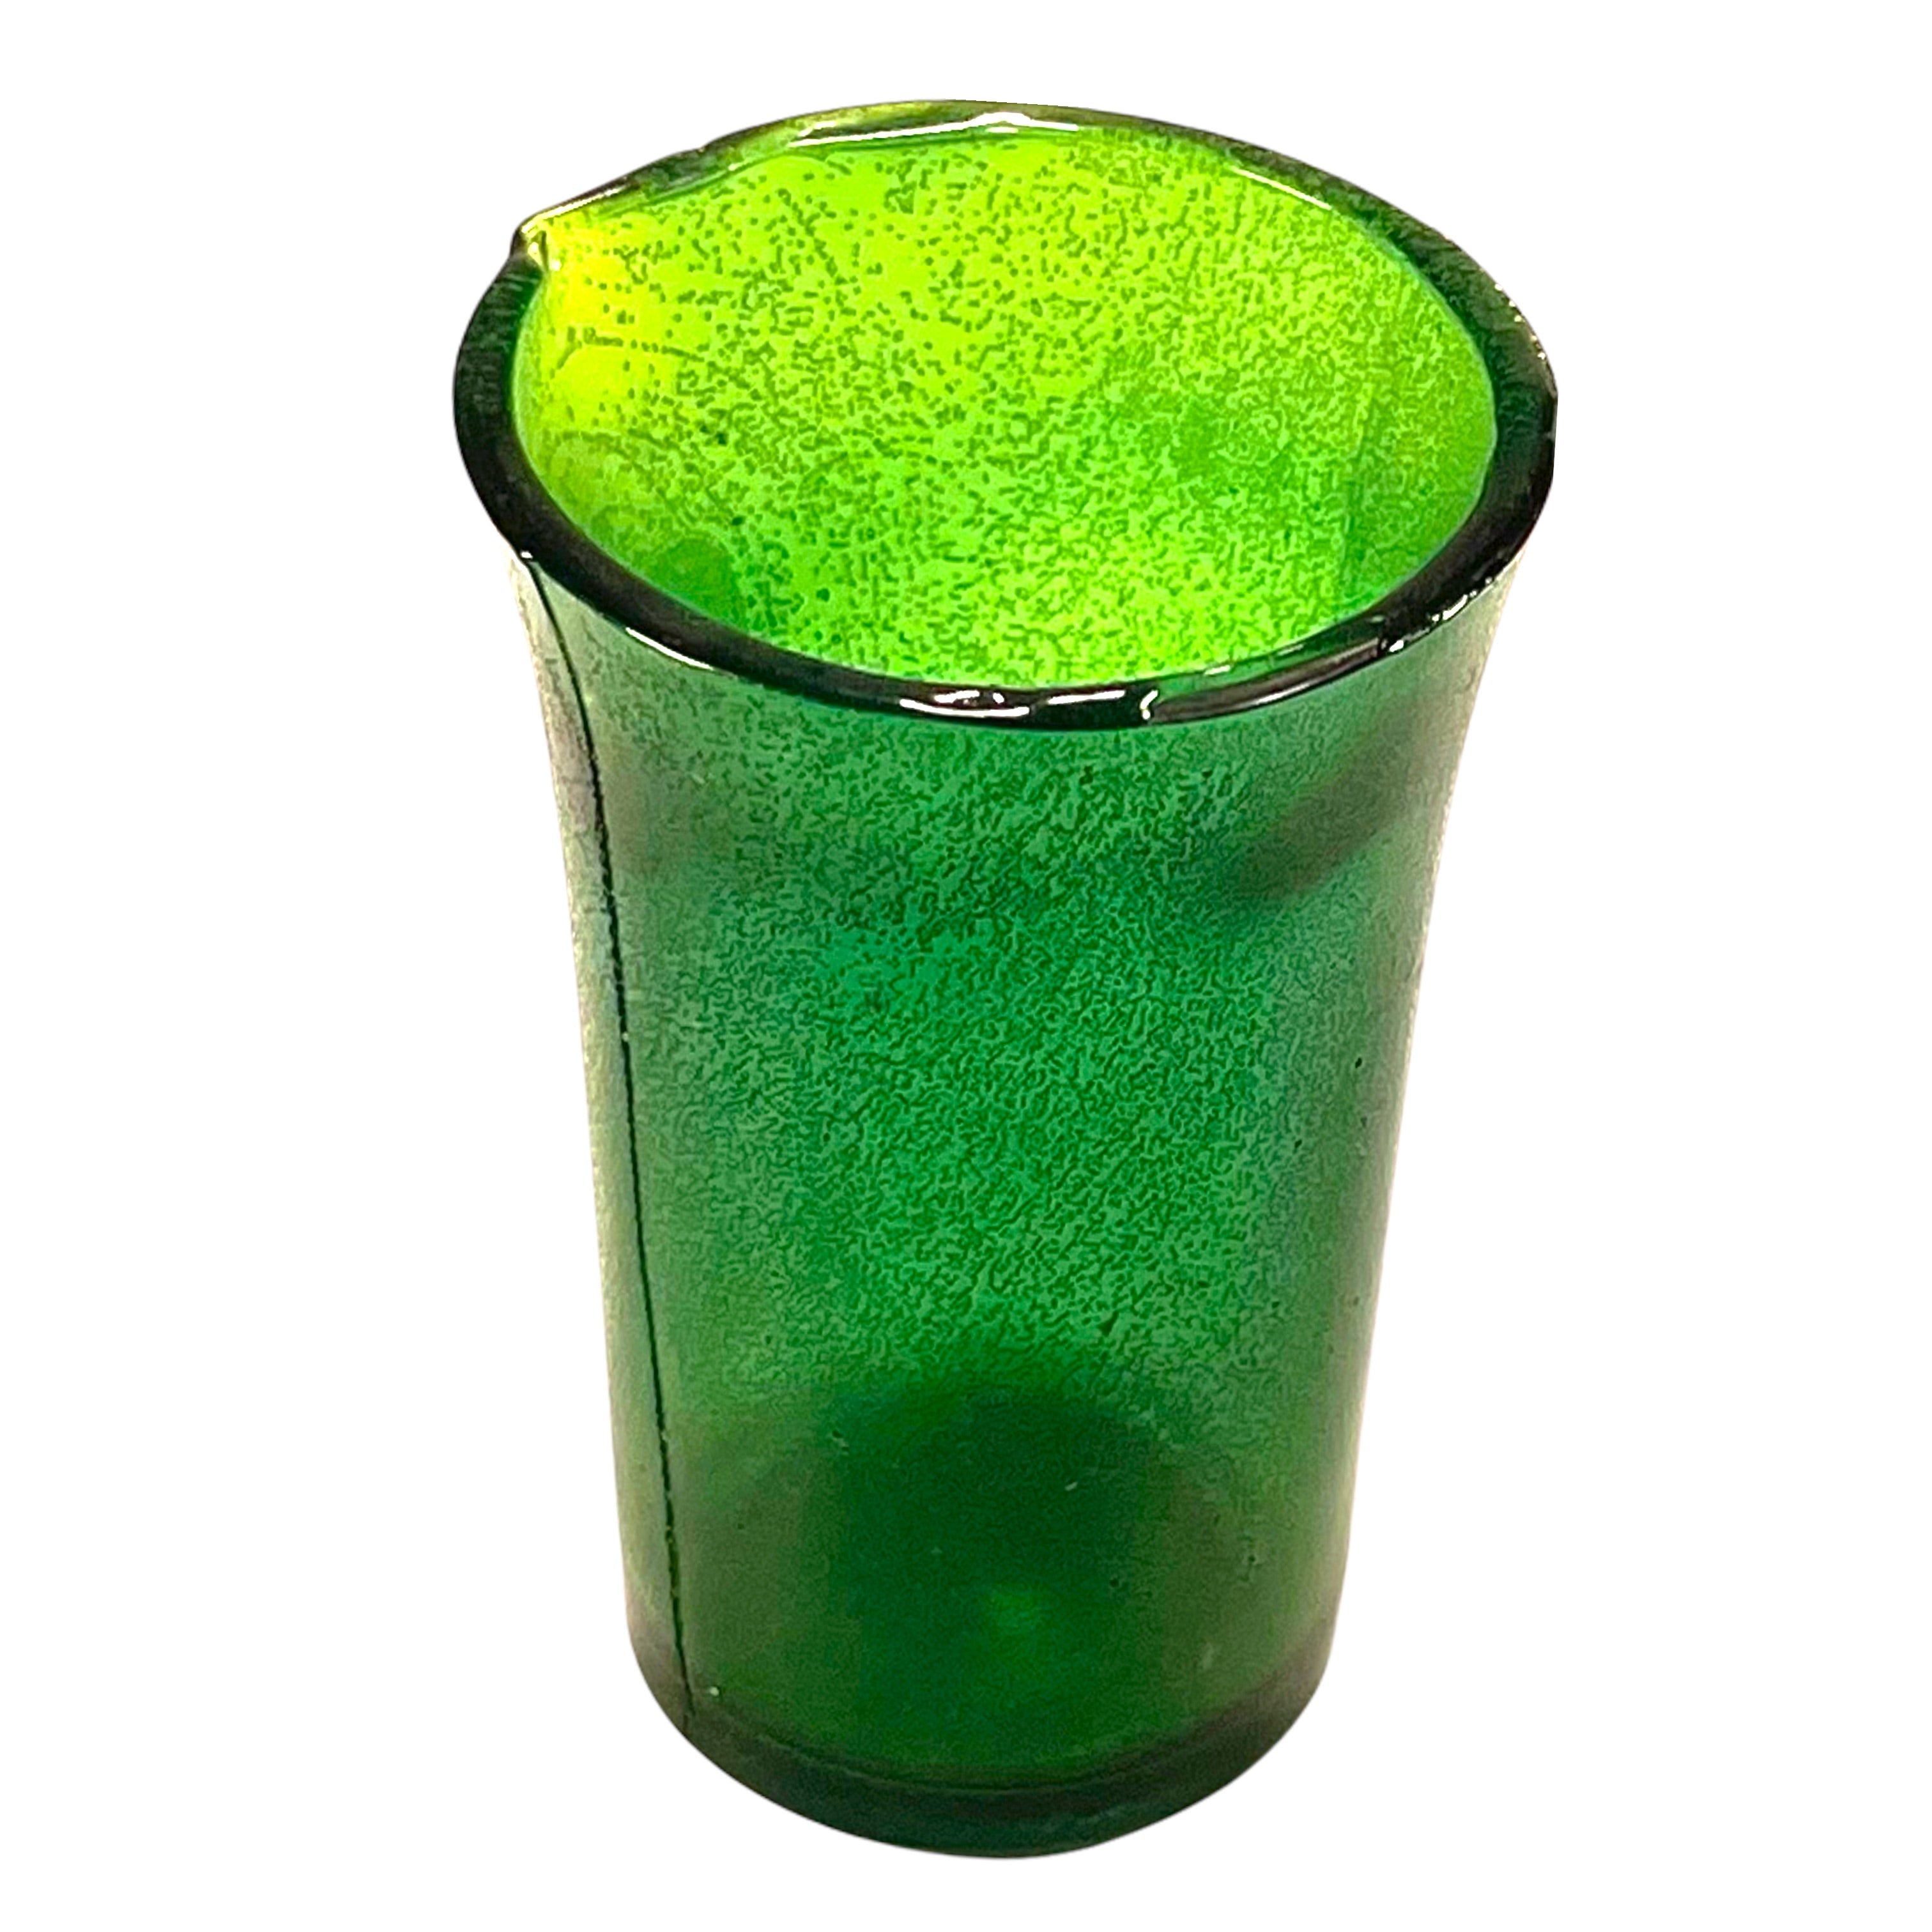 SMASHProps Breakaway Dessert or Cordial Shot Glass - DARK GREEN translucent - Dark Green Translucent